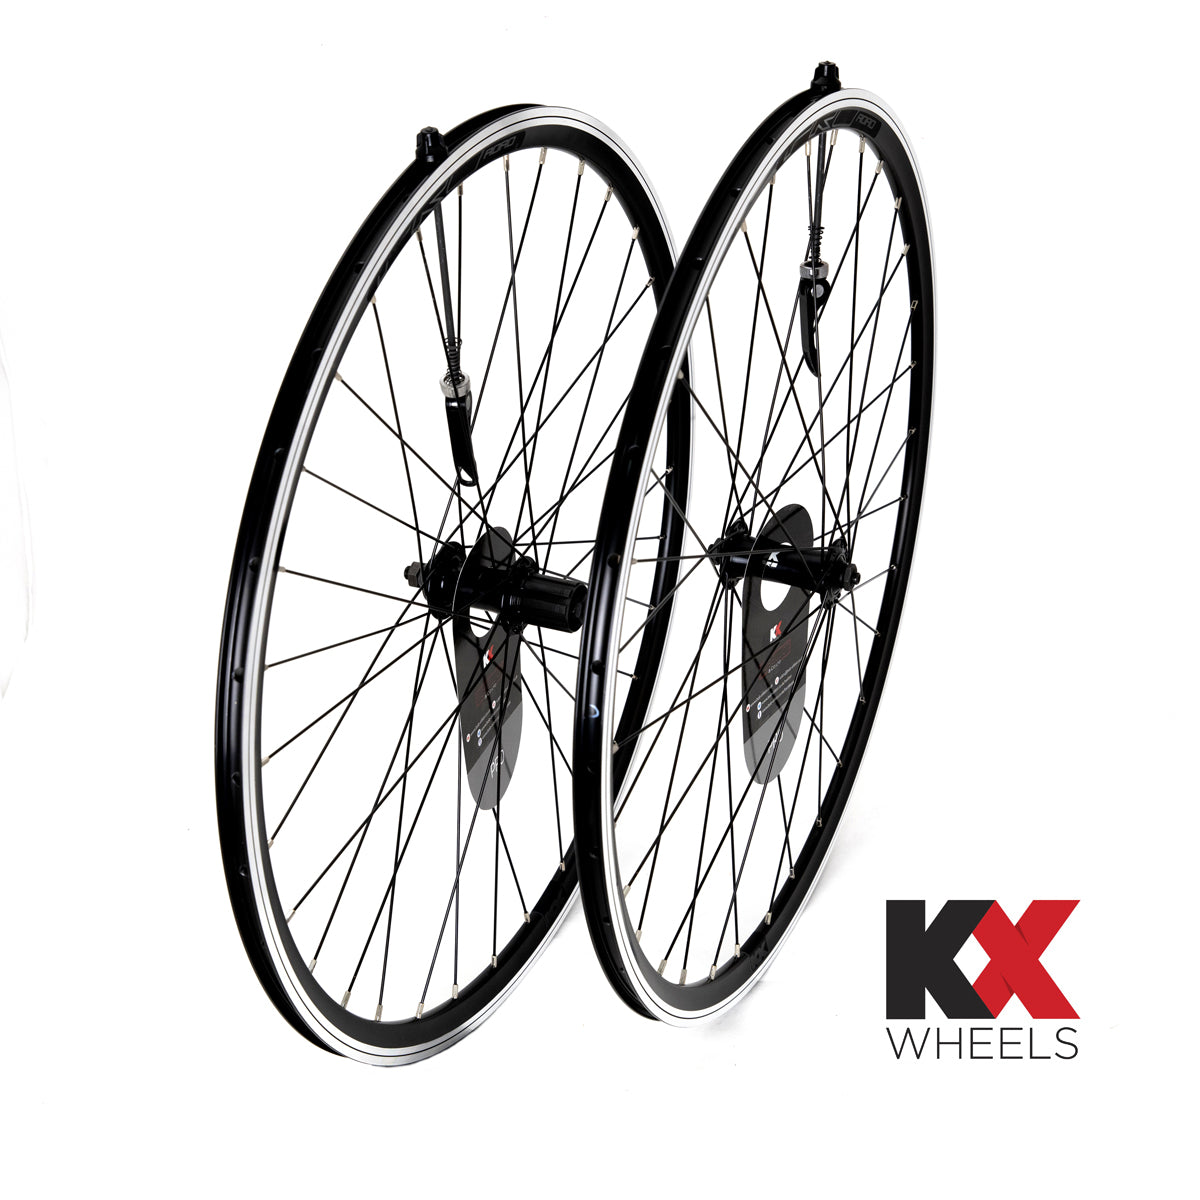 KX Wheels Pro QR Sealed Bearing 8/9/10 Speed 700c Bike Wheel Set